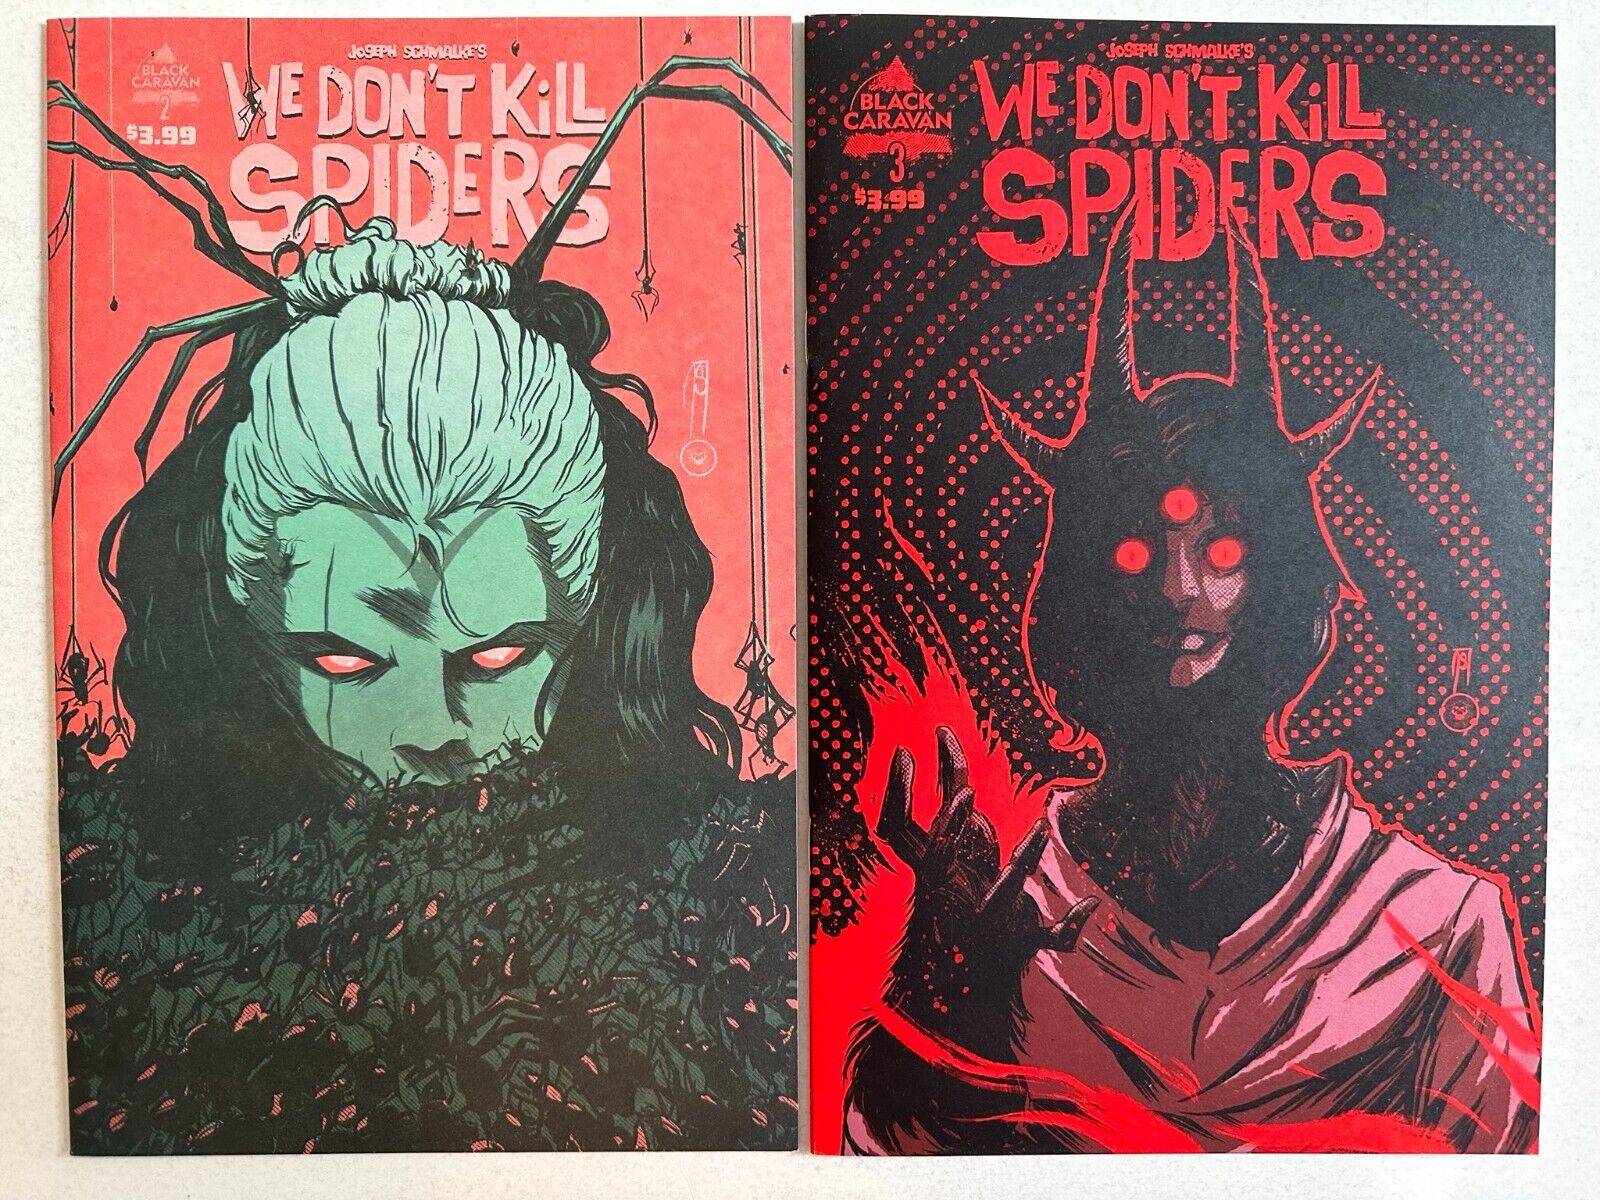 WE DON\'T KILL SPIDERS #2-3 (NM), Black Caravan 2021, First Printings